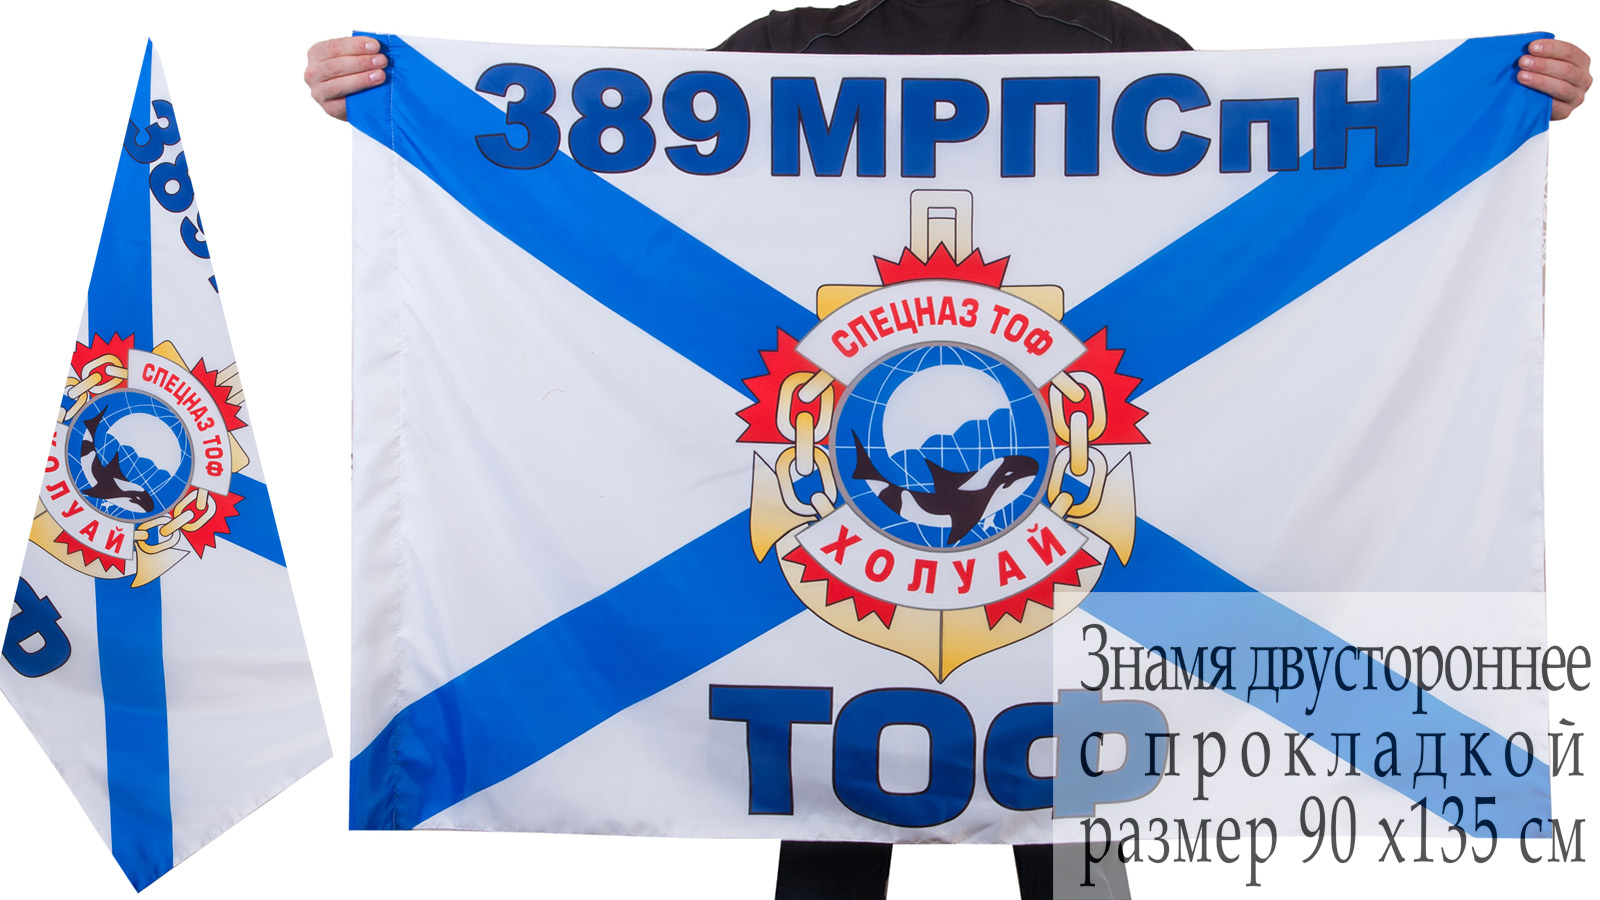 Двусторонний флаг Спецназа ТОФ "389 МРПСпН" 